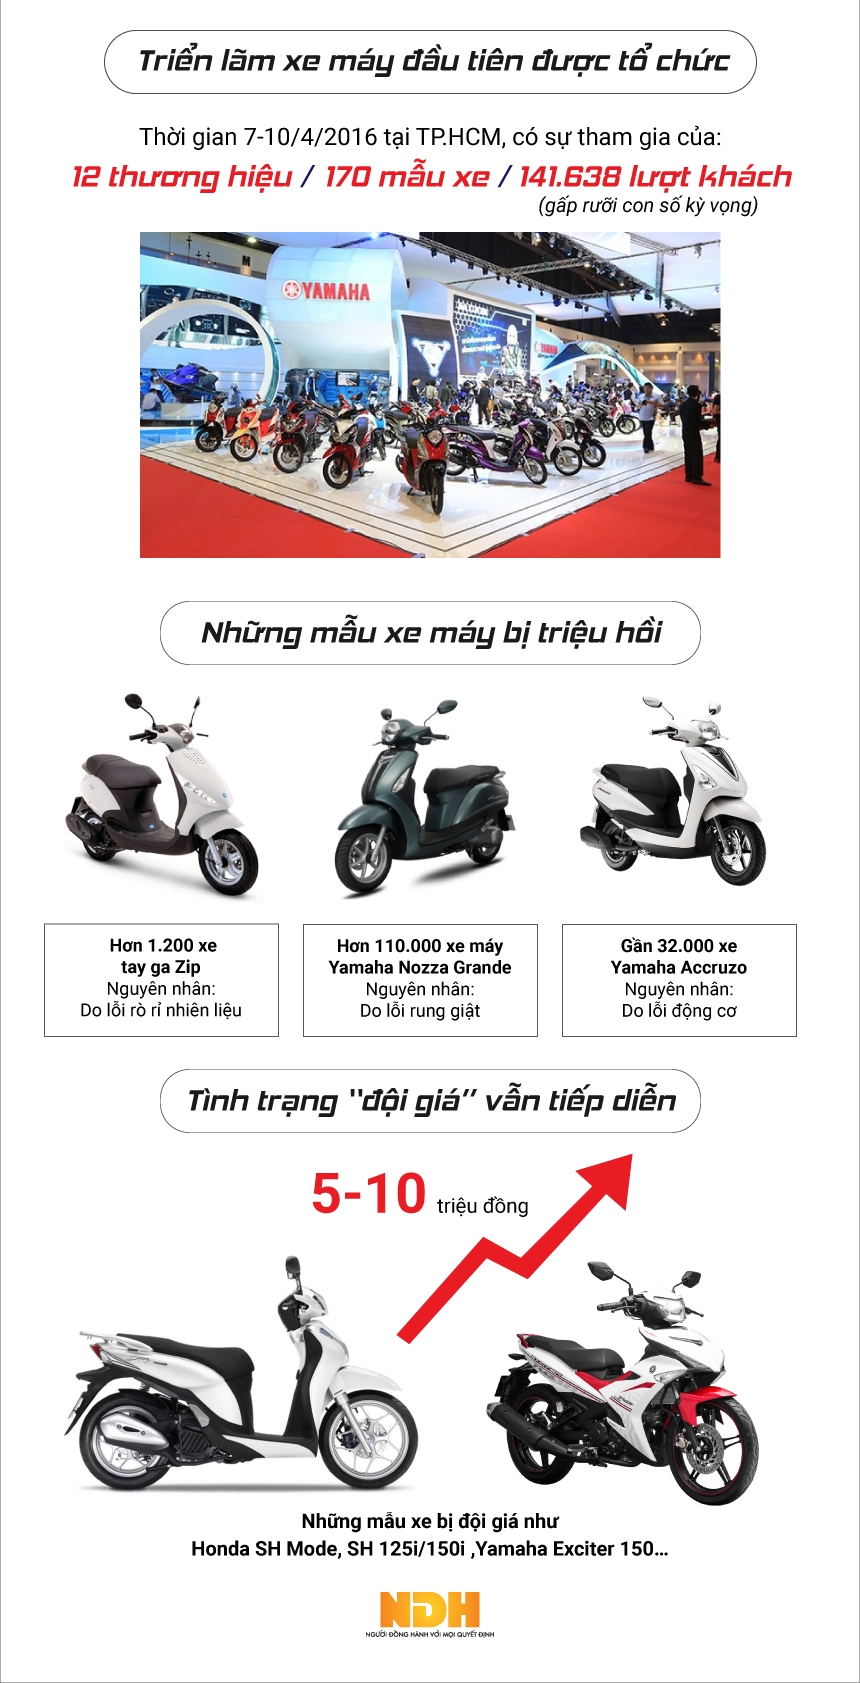 Bức tranh thị trường xe máy Việt Nam năm 2016